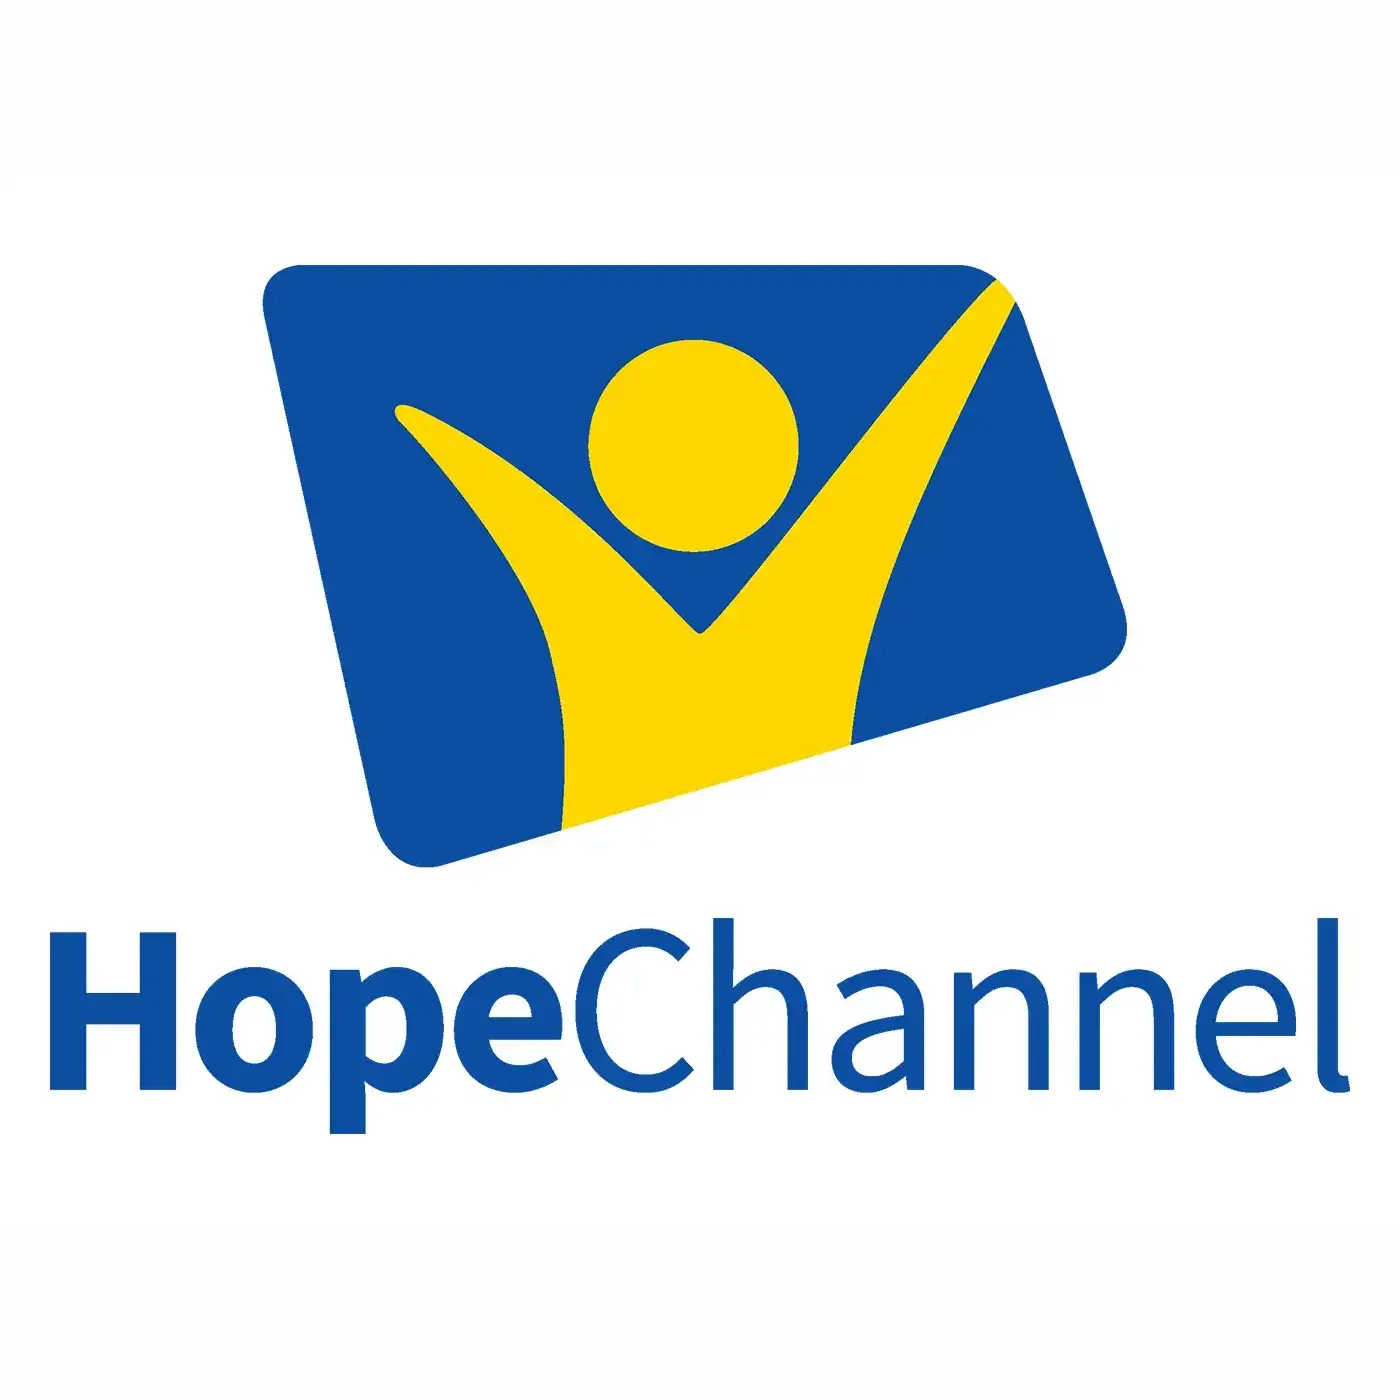 Hope Channel Polska